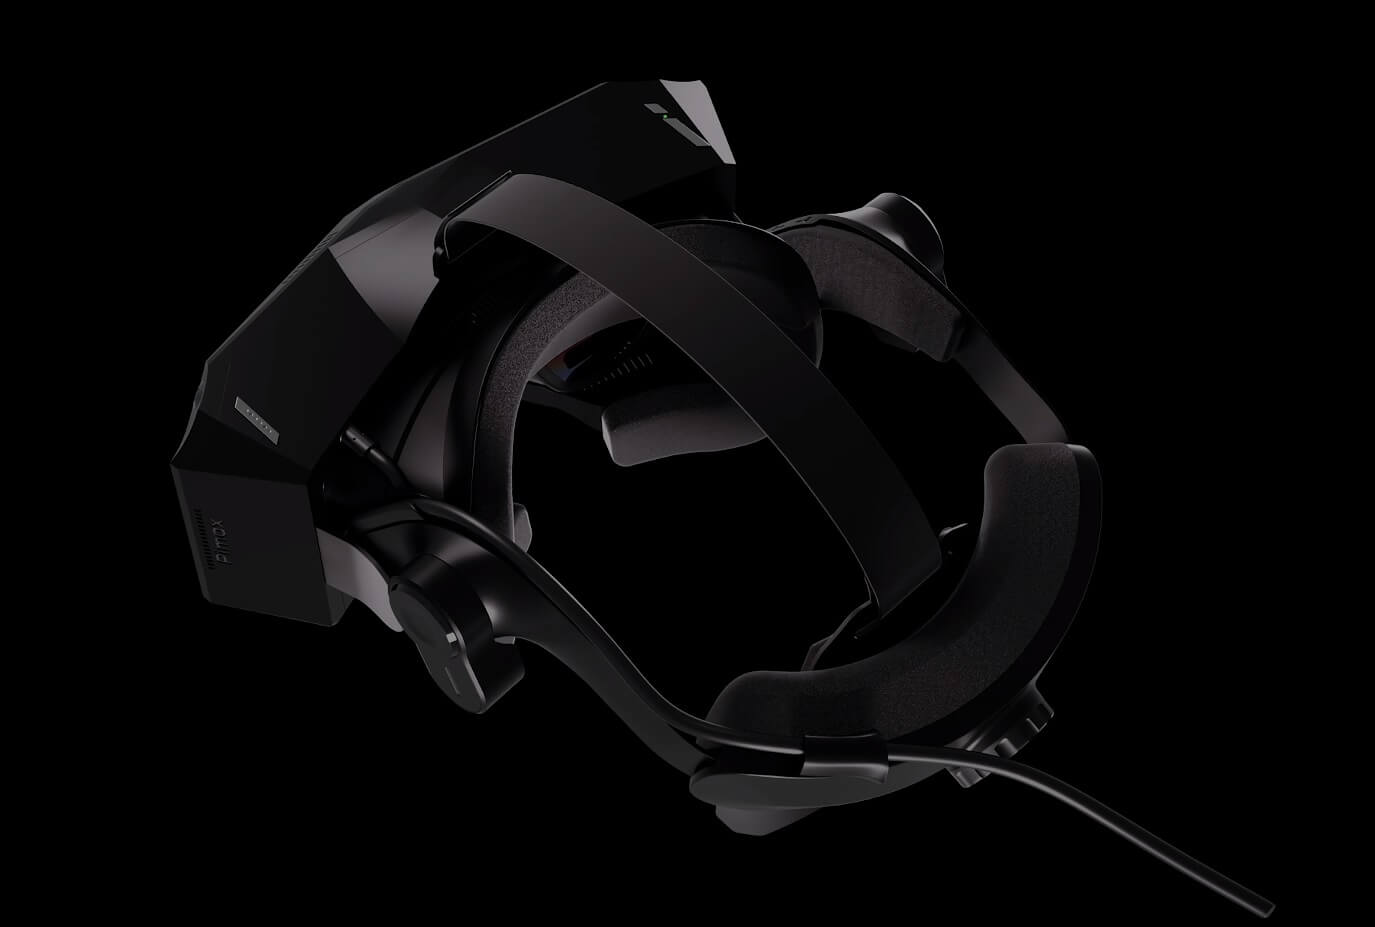 Pimax Crystal Super VR Headset Design